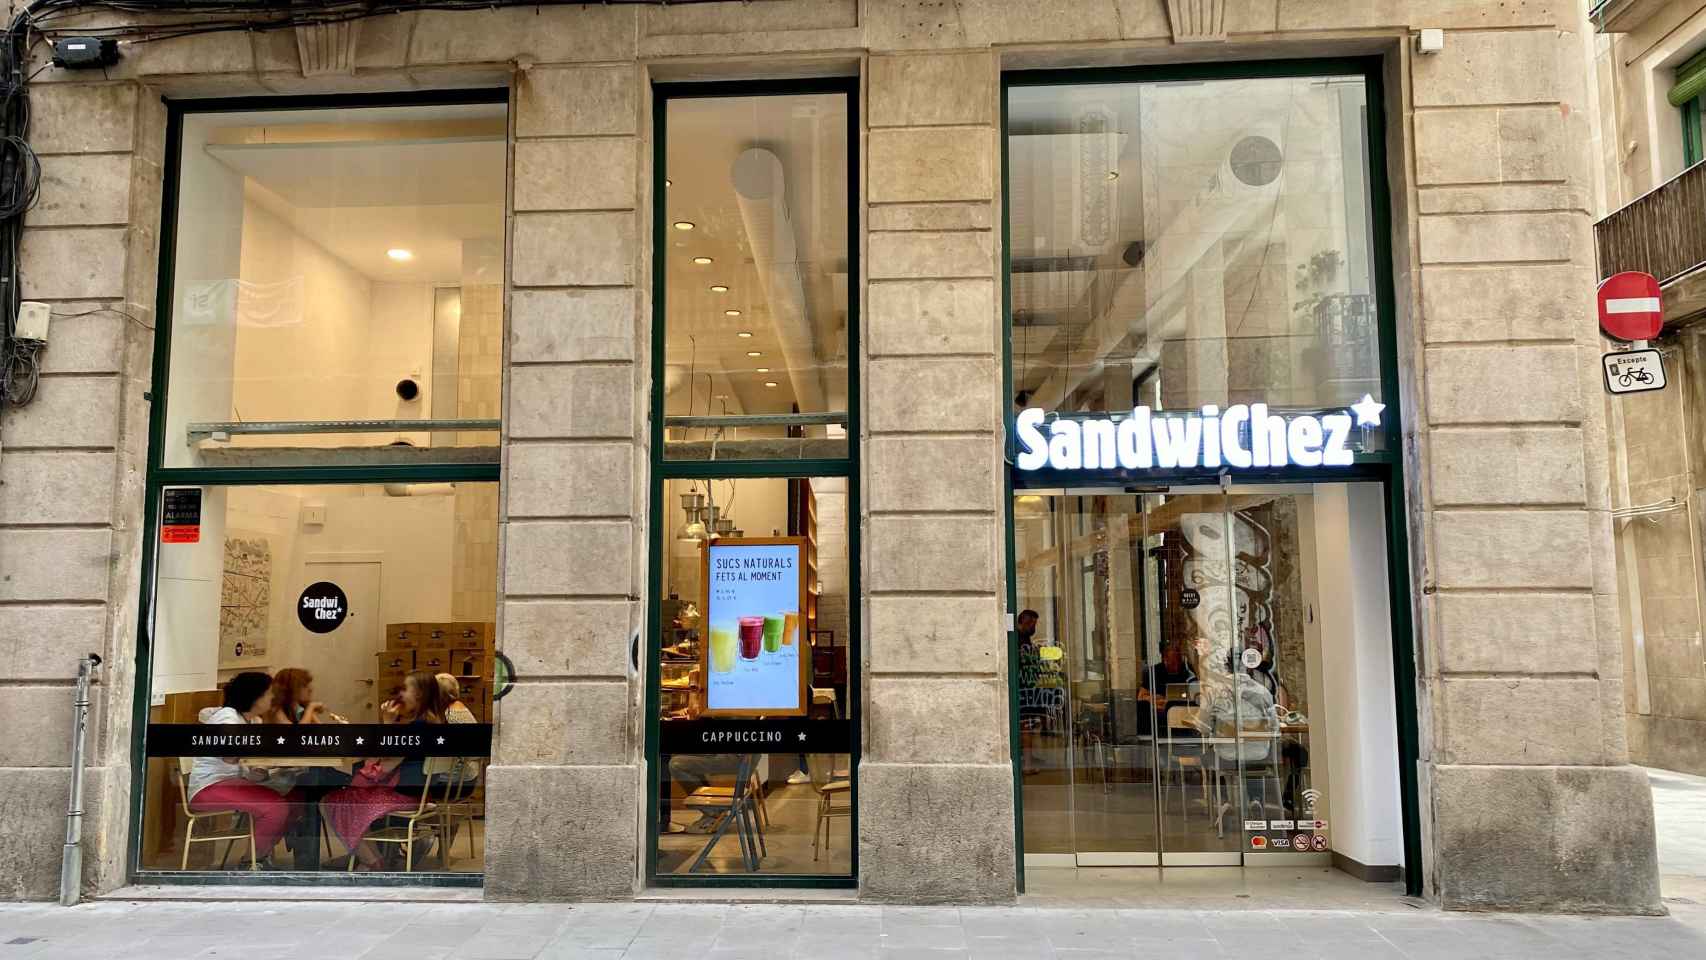 Nuevo establecimiento SandwiChez, ubicado en la calle del Carme, 25 / Laborde Marcet